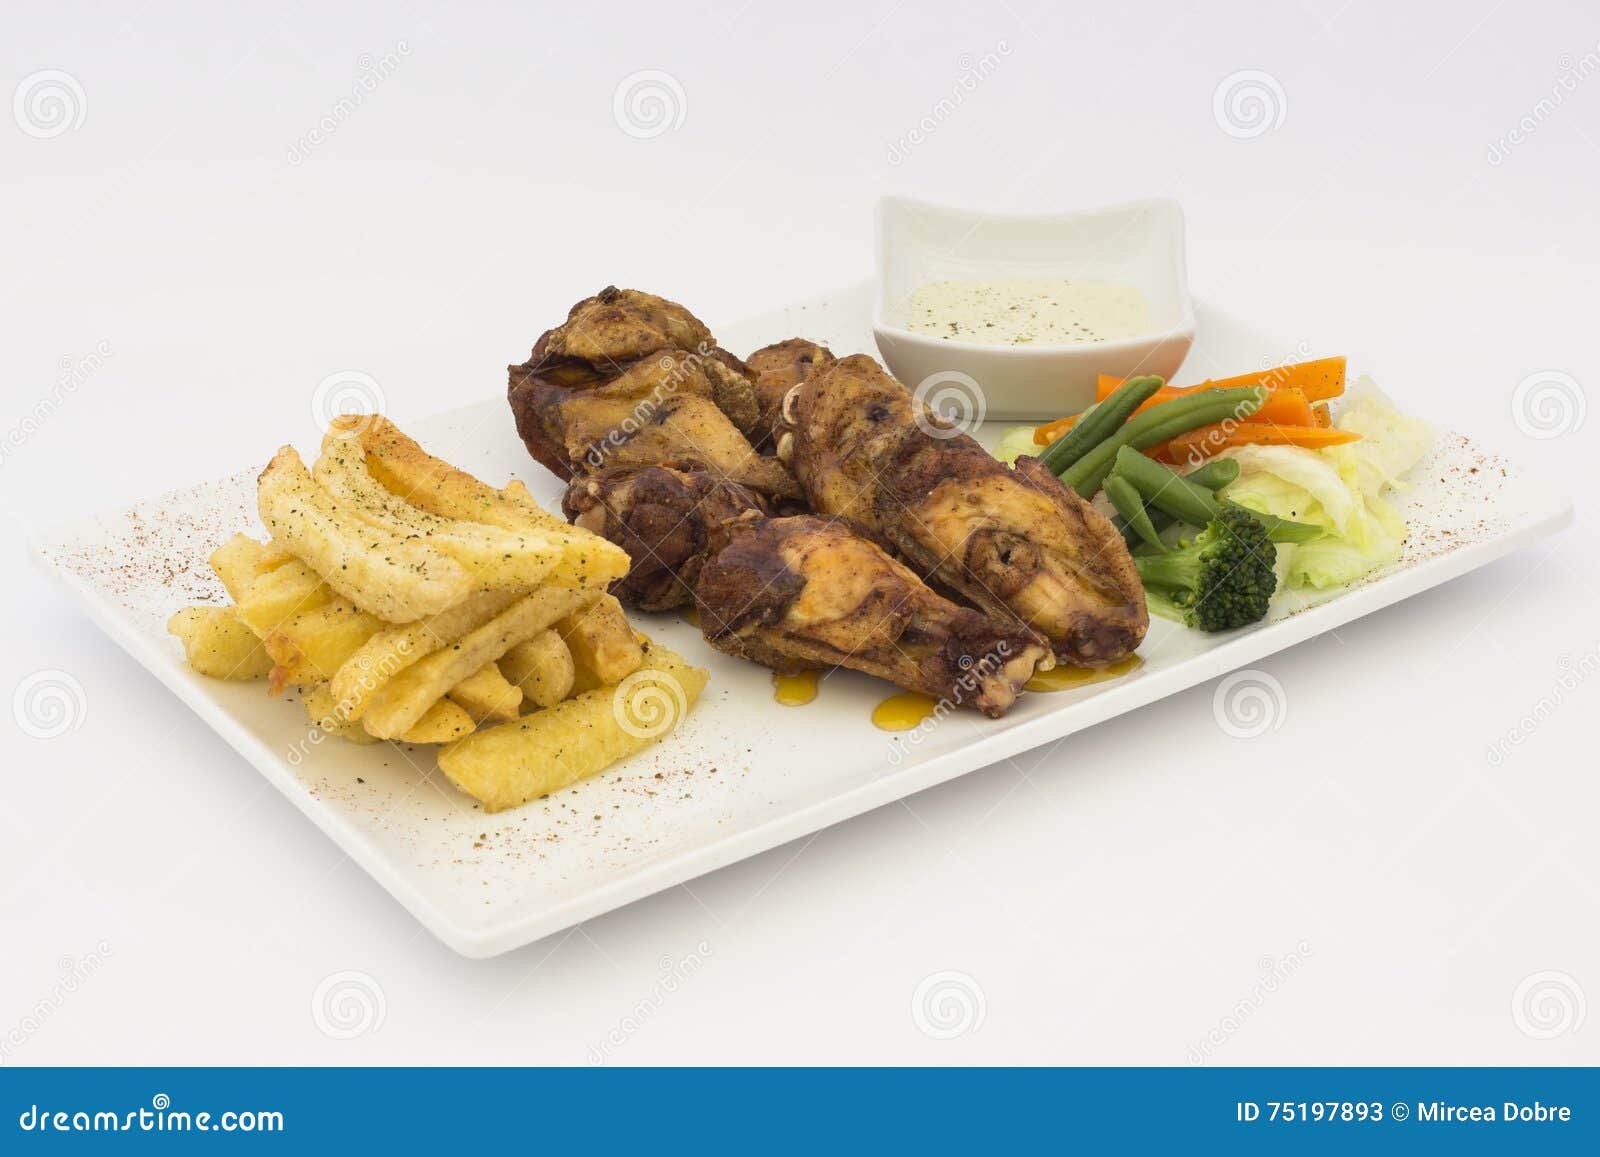 deep-fried chicken (chicharrÃÂ³n de pollo), fried chicken nuggets, french fries and vegetables with chili sauce